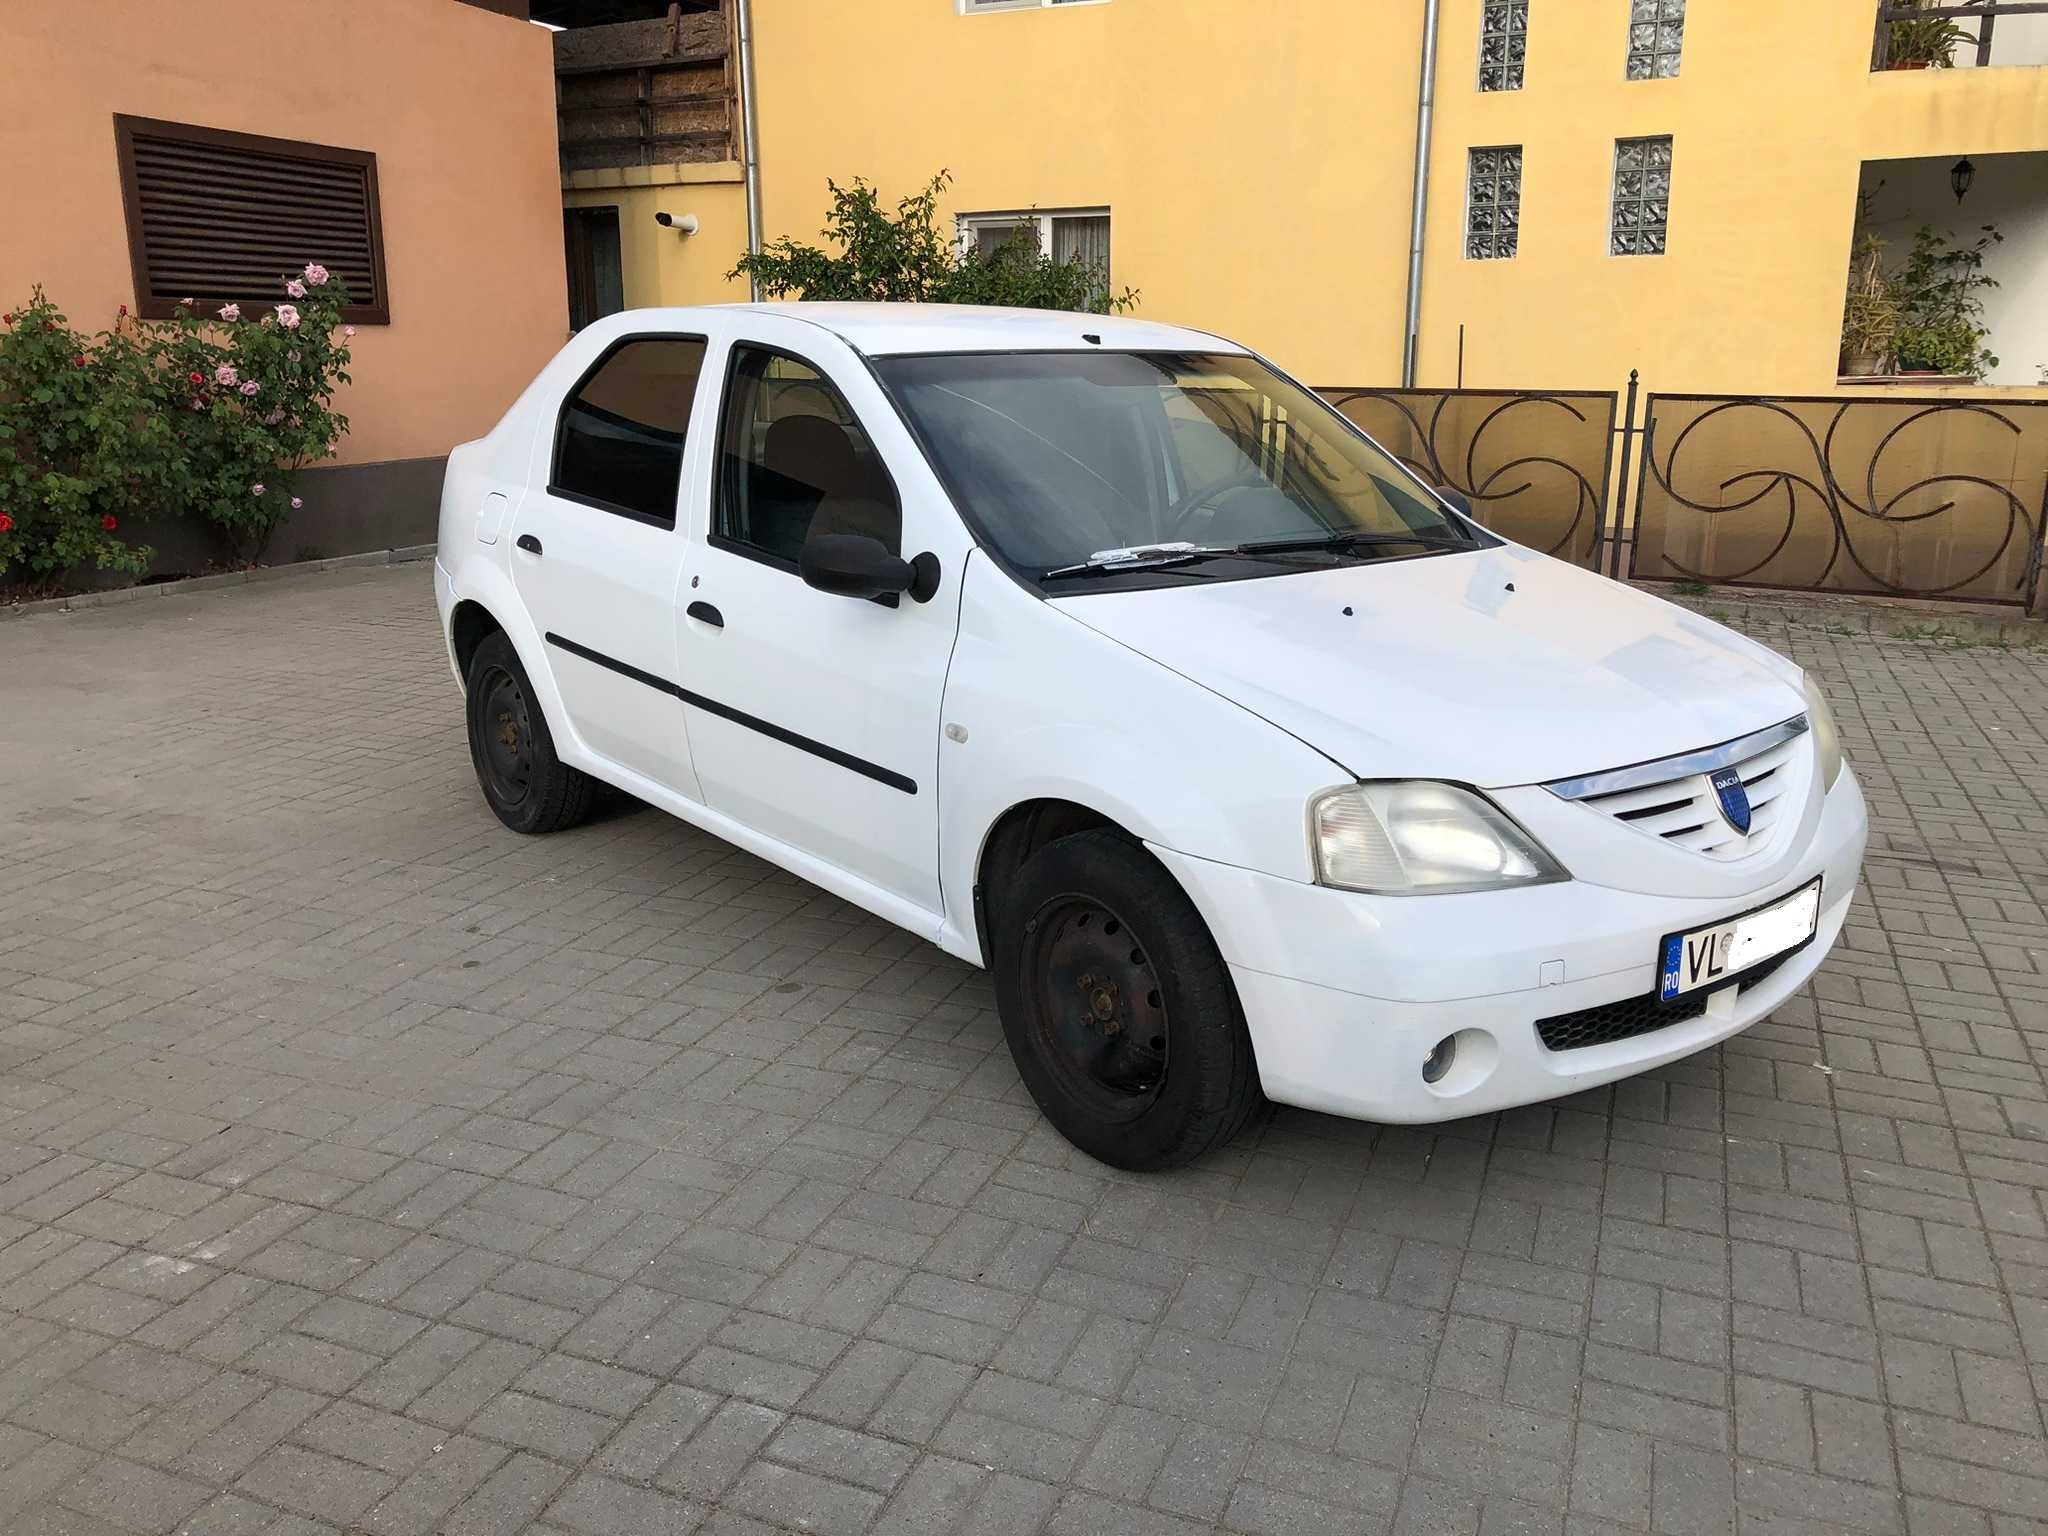 Dacia Logan 1.4Mpi